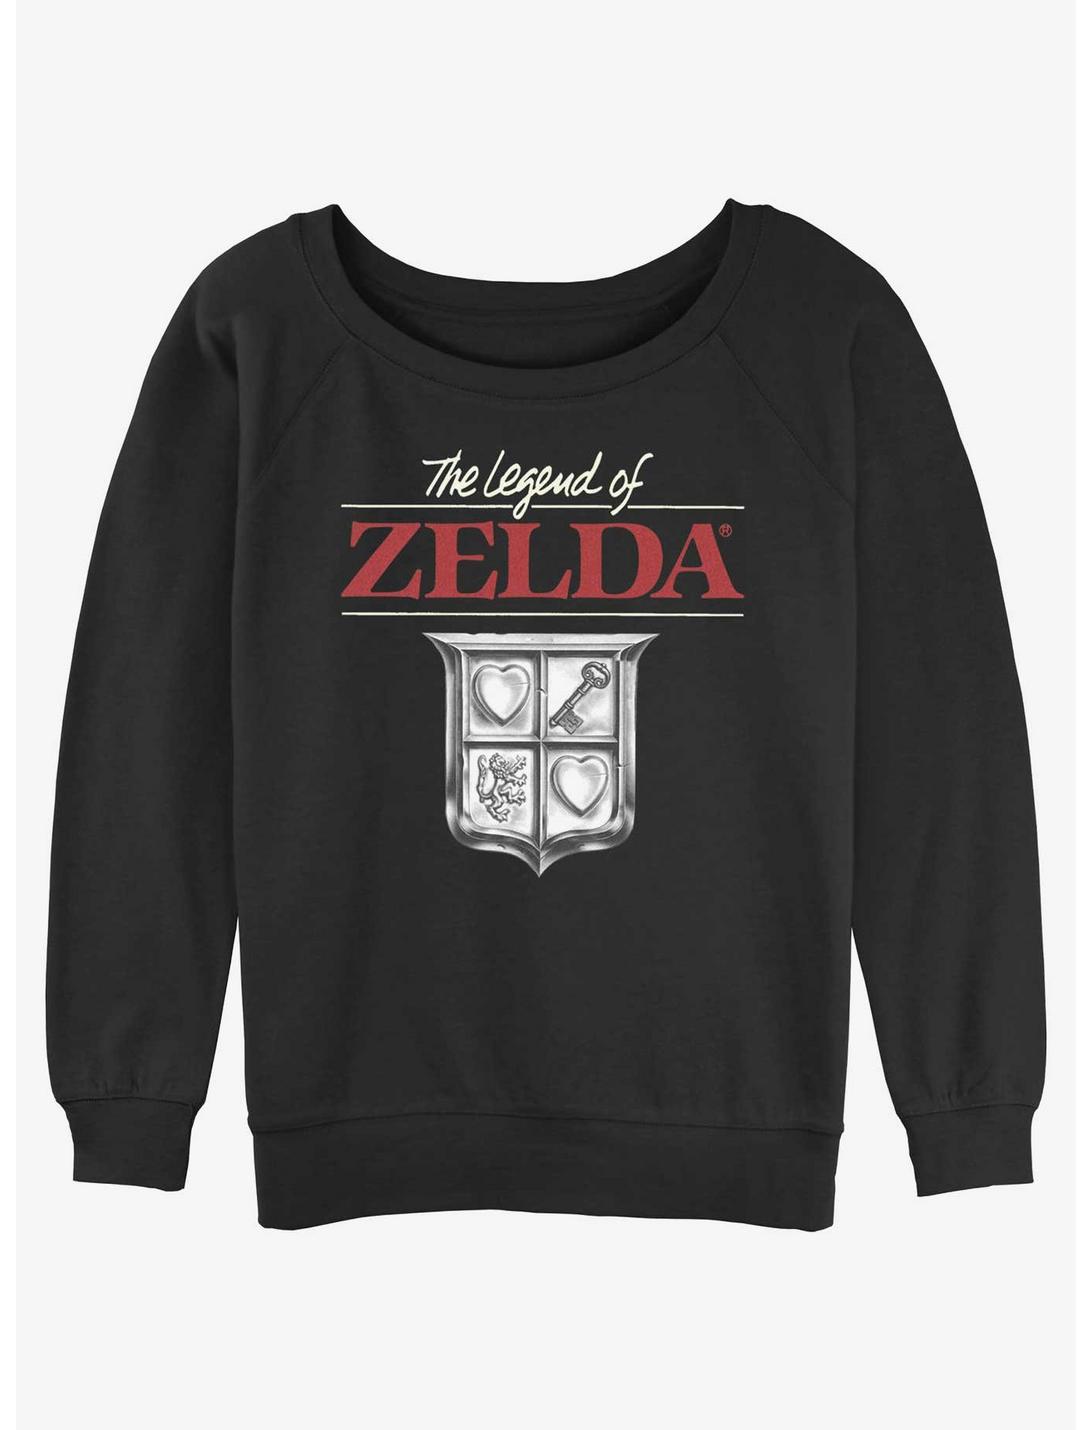 The Legend of Zelda Crest Girls Slouchy Sweatshirt, BLACK, hi-res